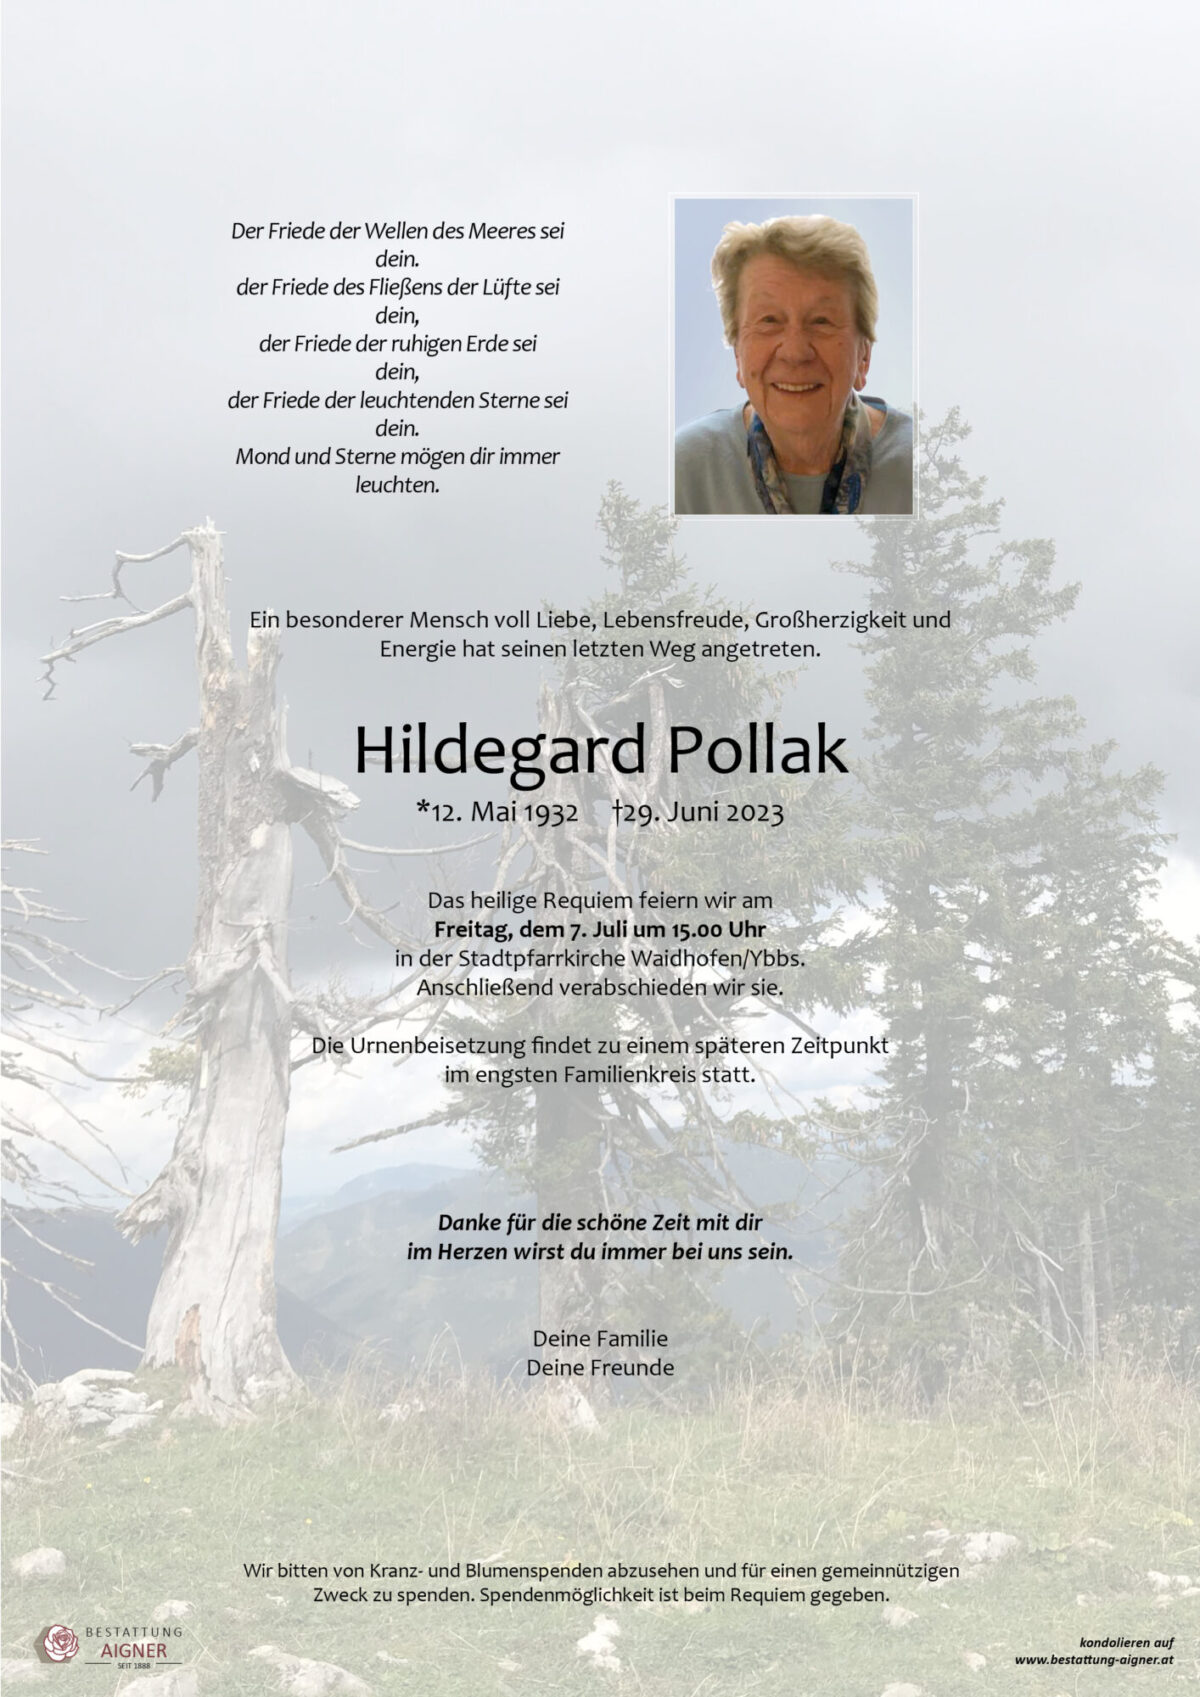 Hildegard Pollak